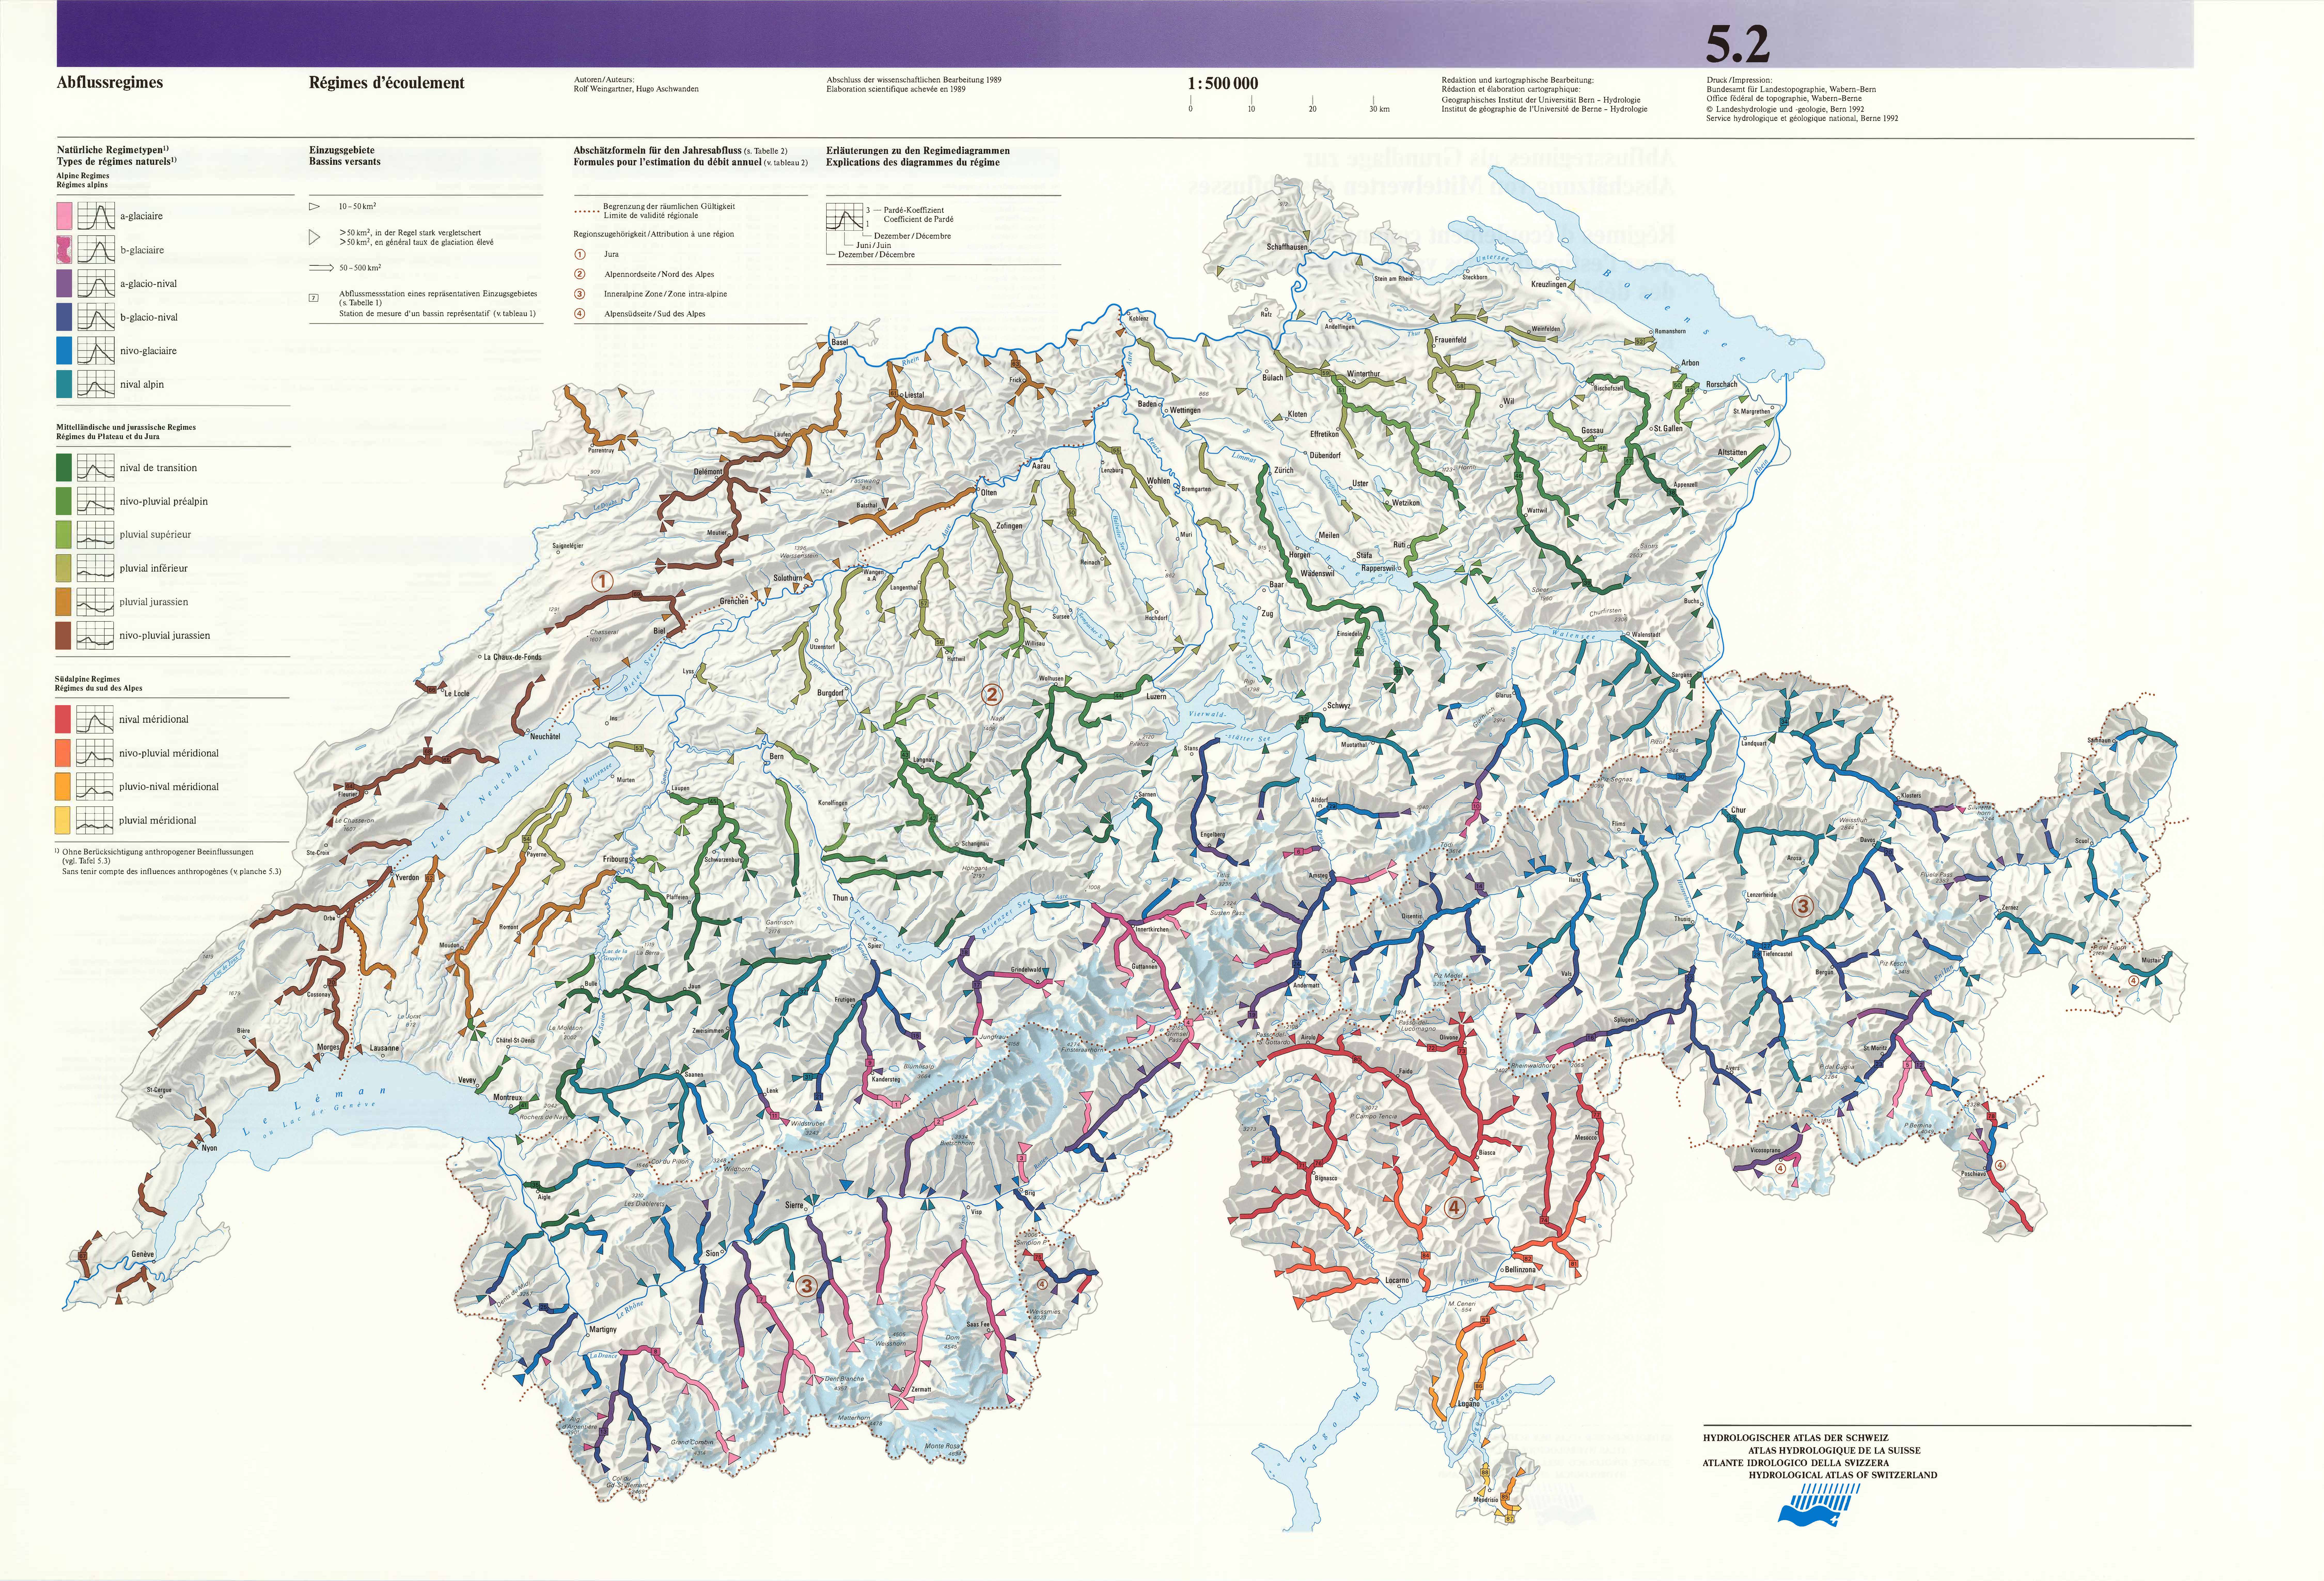 Abflussregimes als Grundlage zur Abschätzung von Mittelwerten des Abflusses, Hydrologischer Atlas der Schweiz - Tafel 5.2